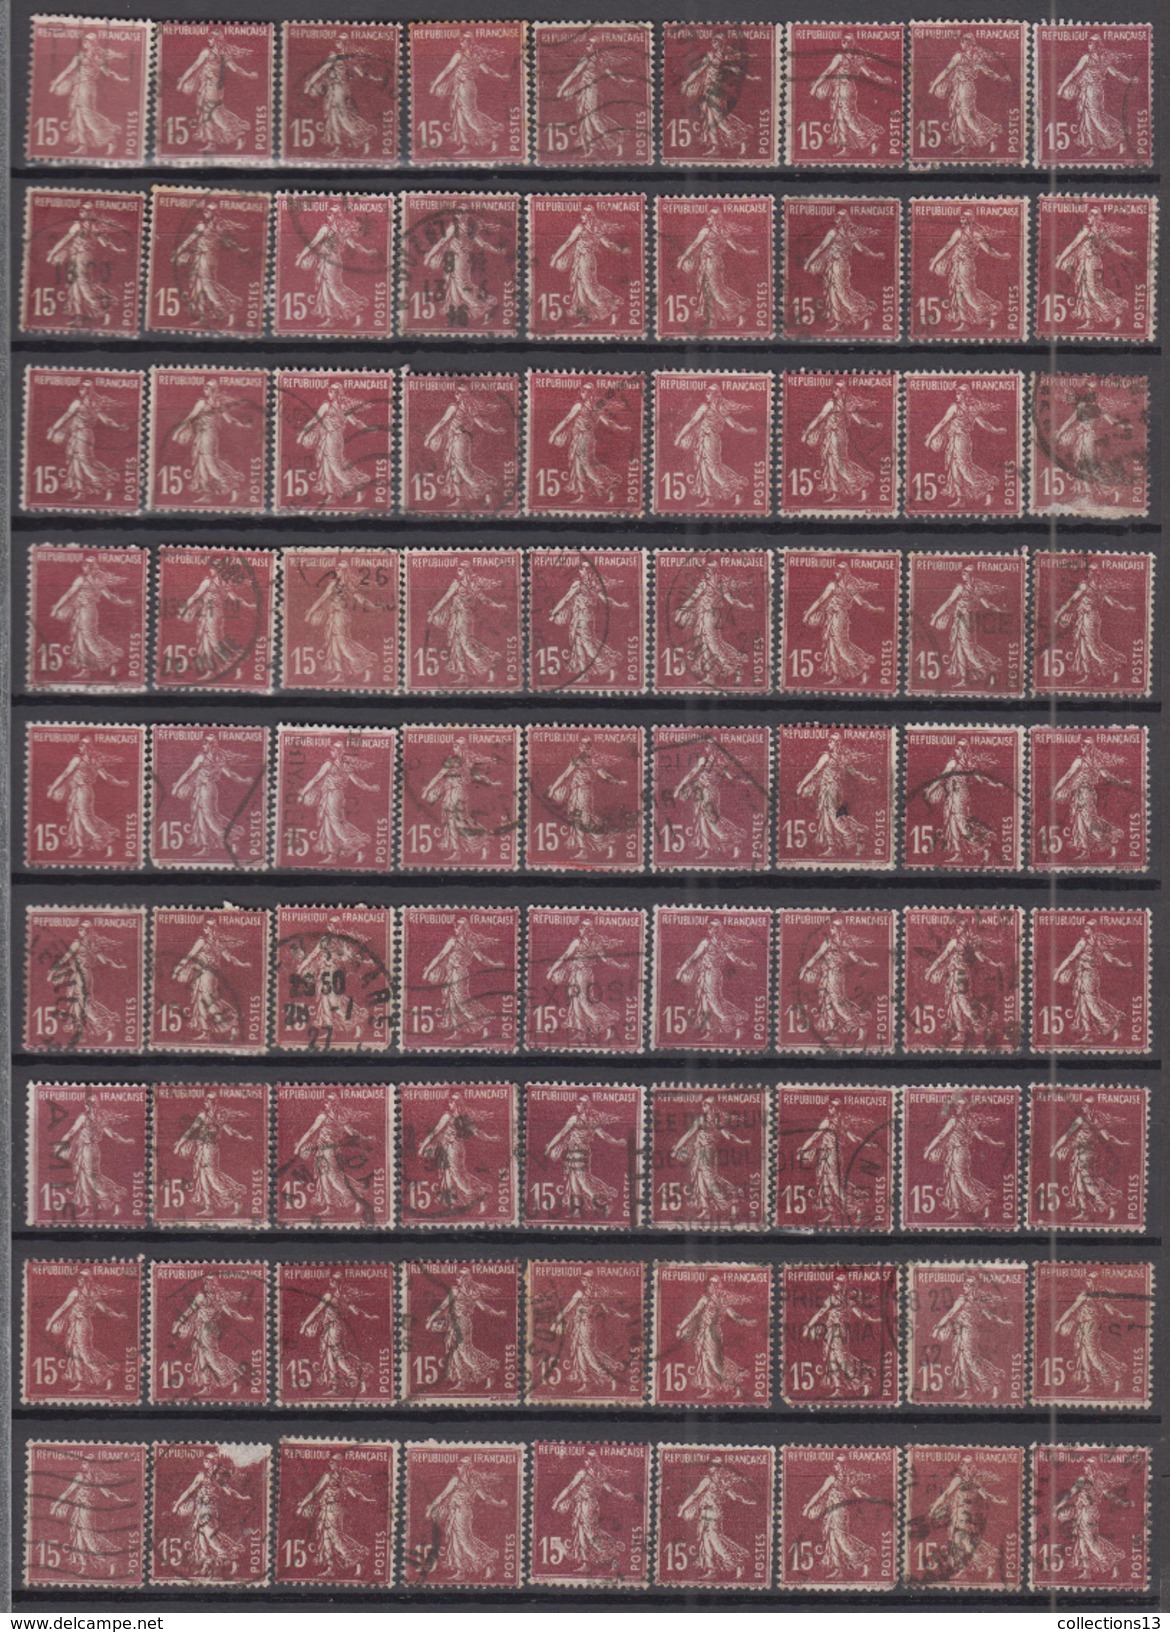 FRANCE - lot de 4000 timbres (type semeuse camée) depart a 1 ct le timbre